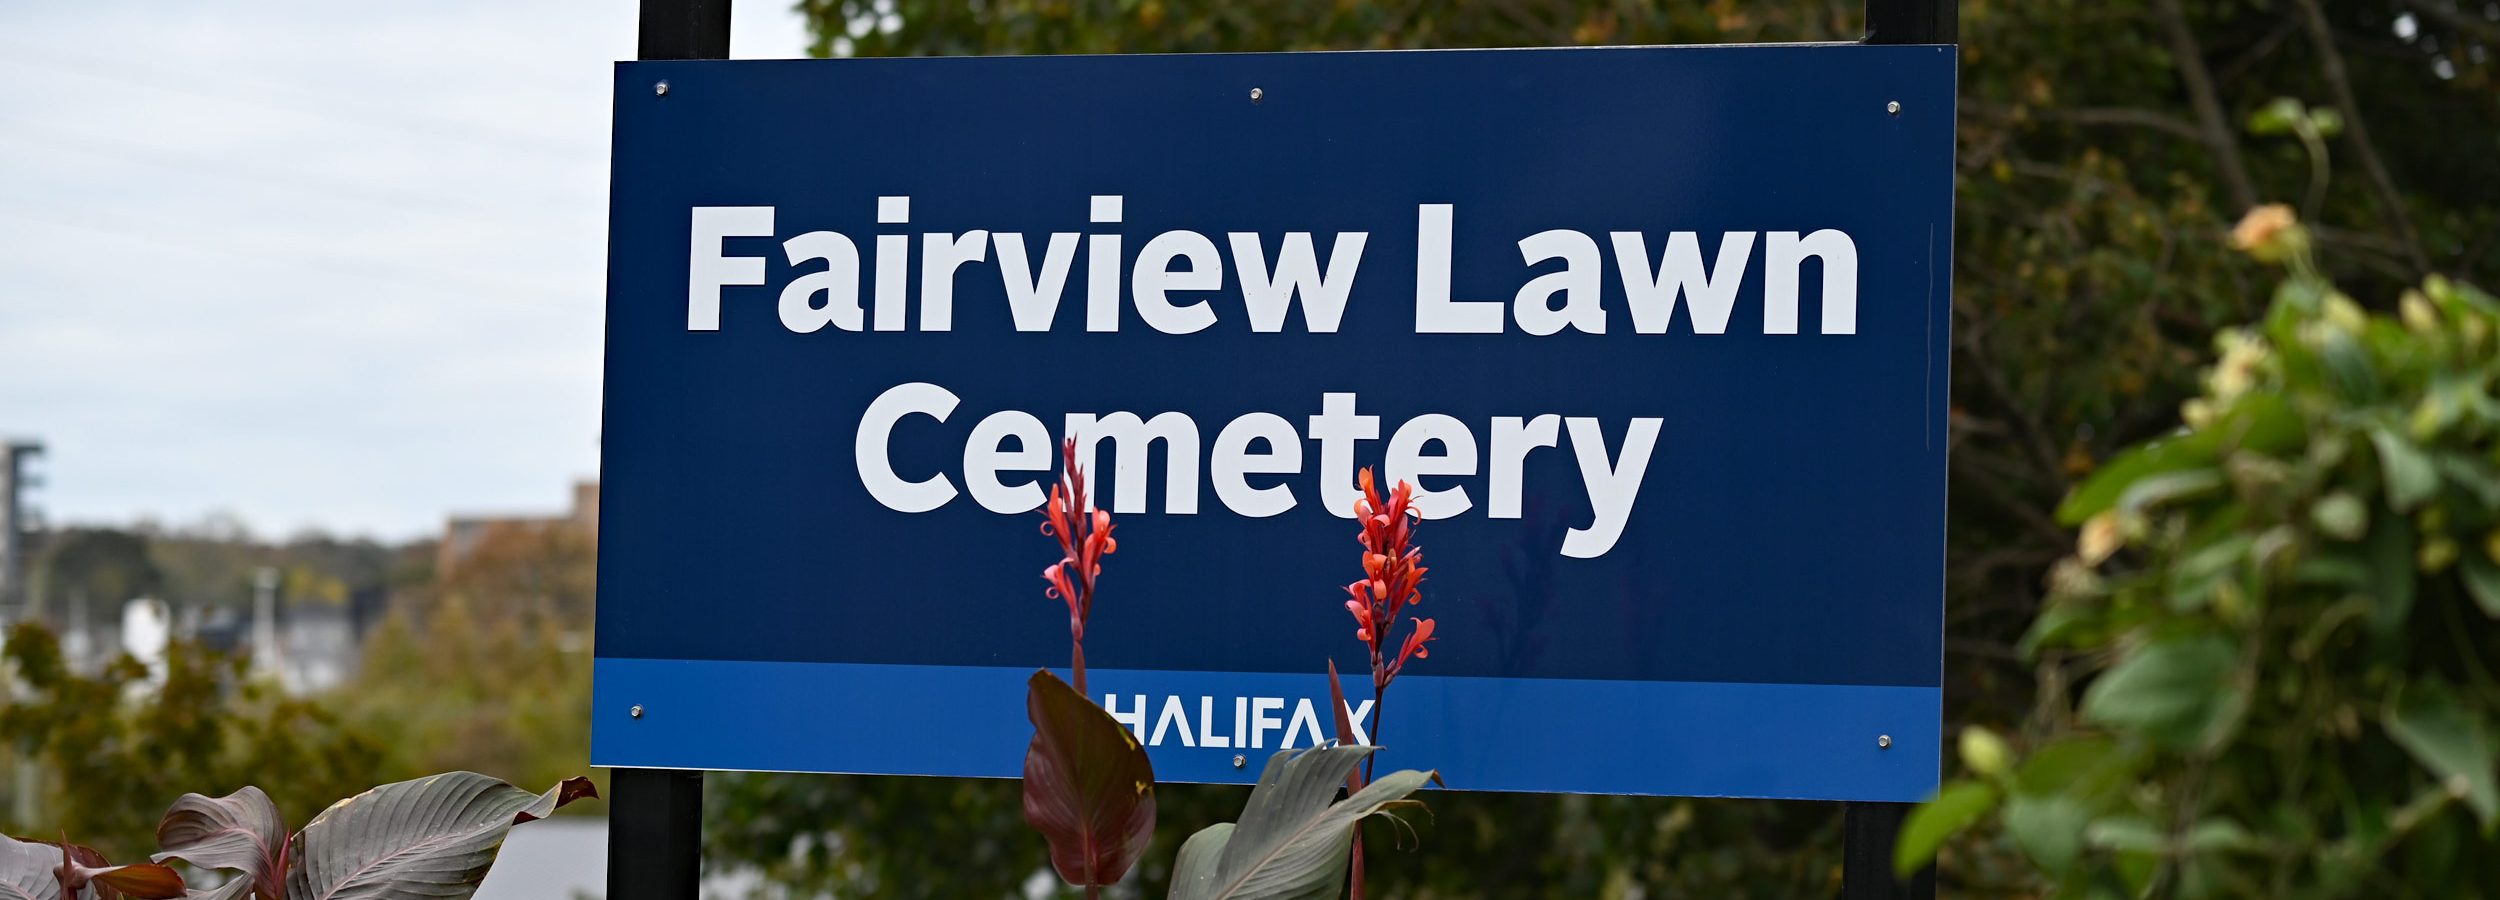 Fairview Lawn Cemetery, Halifax - cmentarz pasażerów Titanica